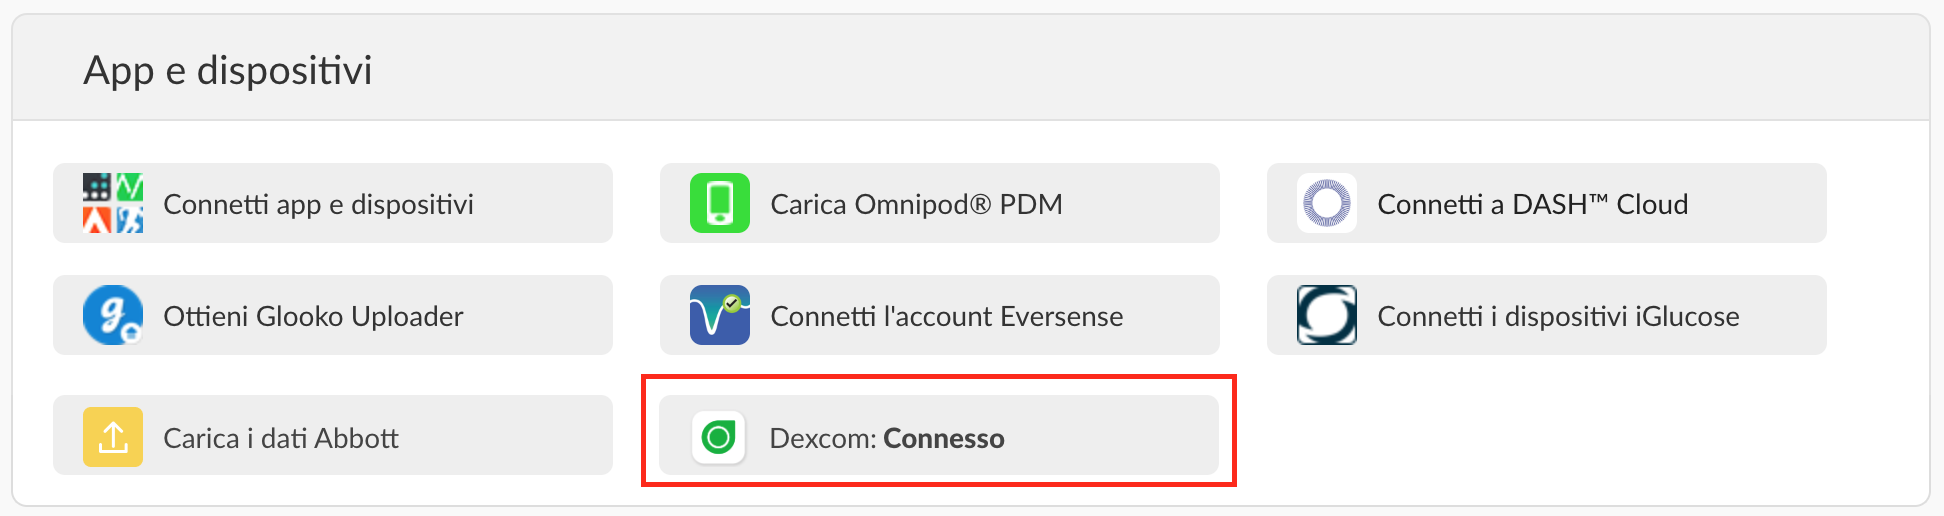 italian-web-dexcomconnectednew.png